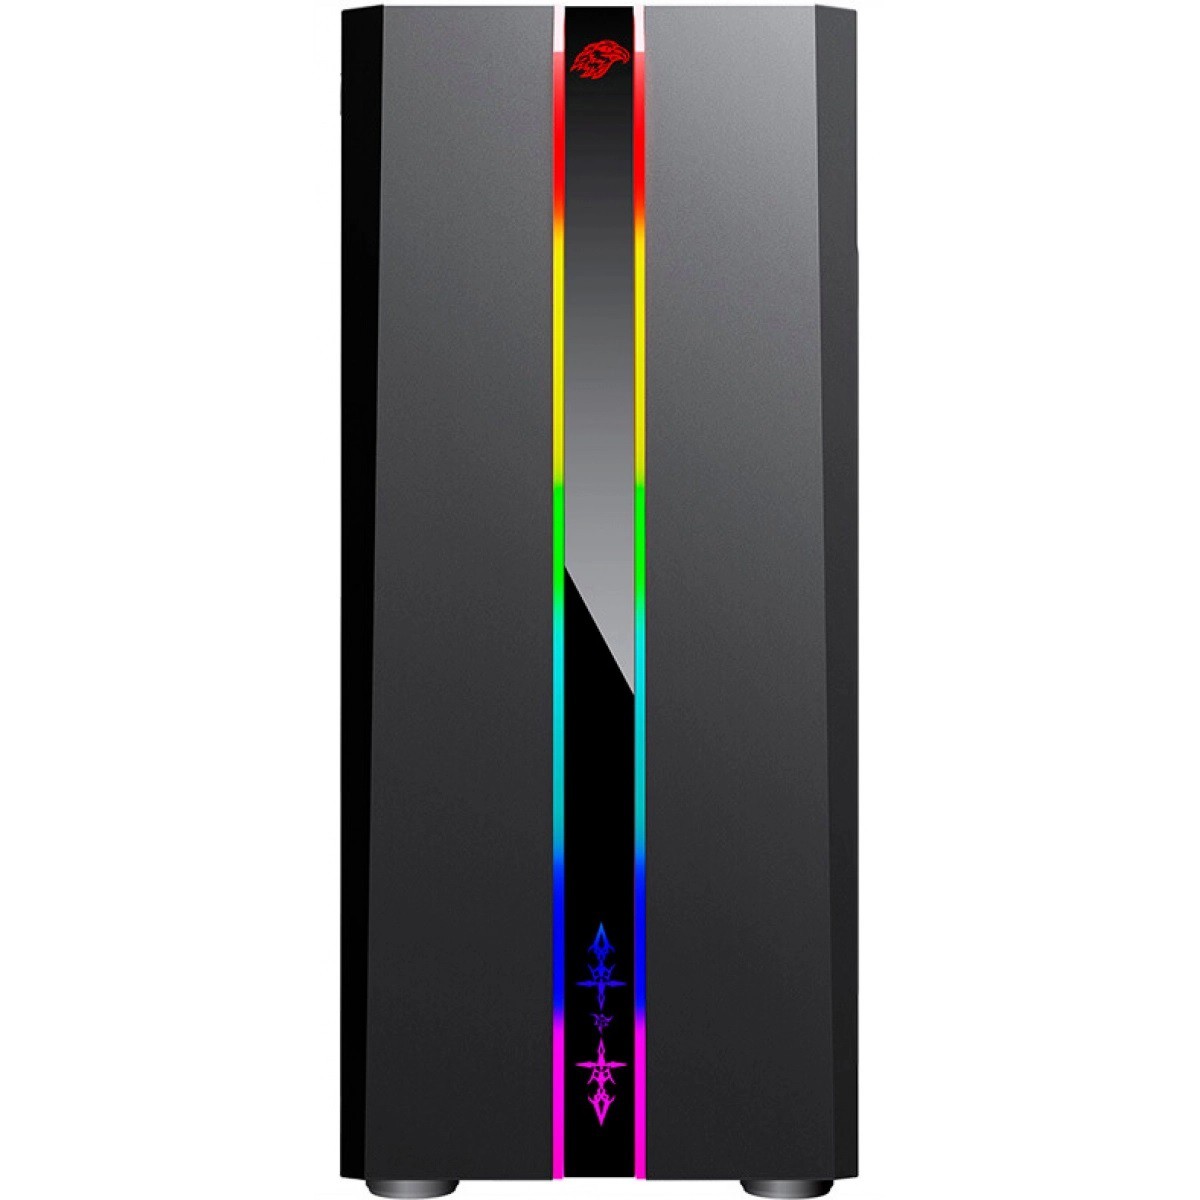 Gabinete Gamer K-mex Odyssey RGB, Mid Tower, Lateral de Acrílico, Black, Sem Fonte, Sem Fan, CG-04RD